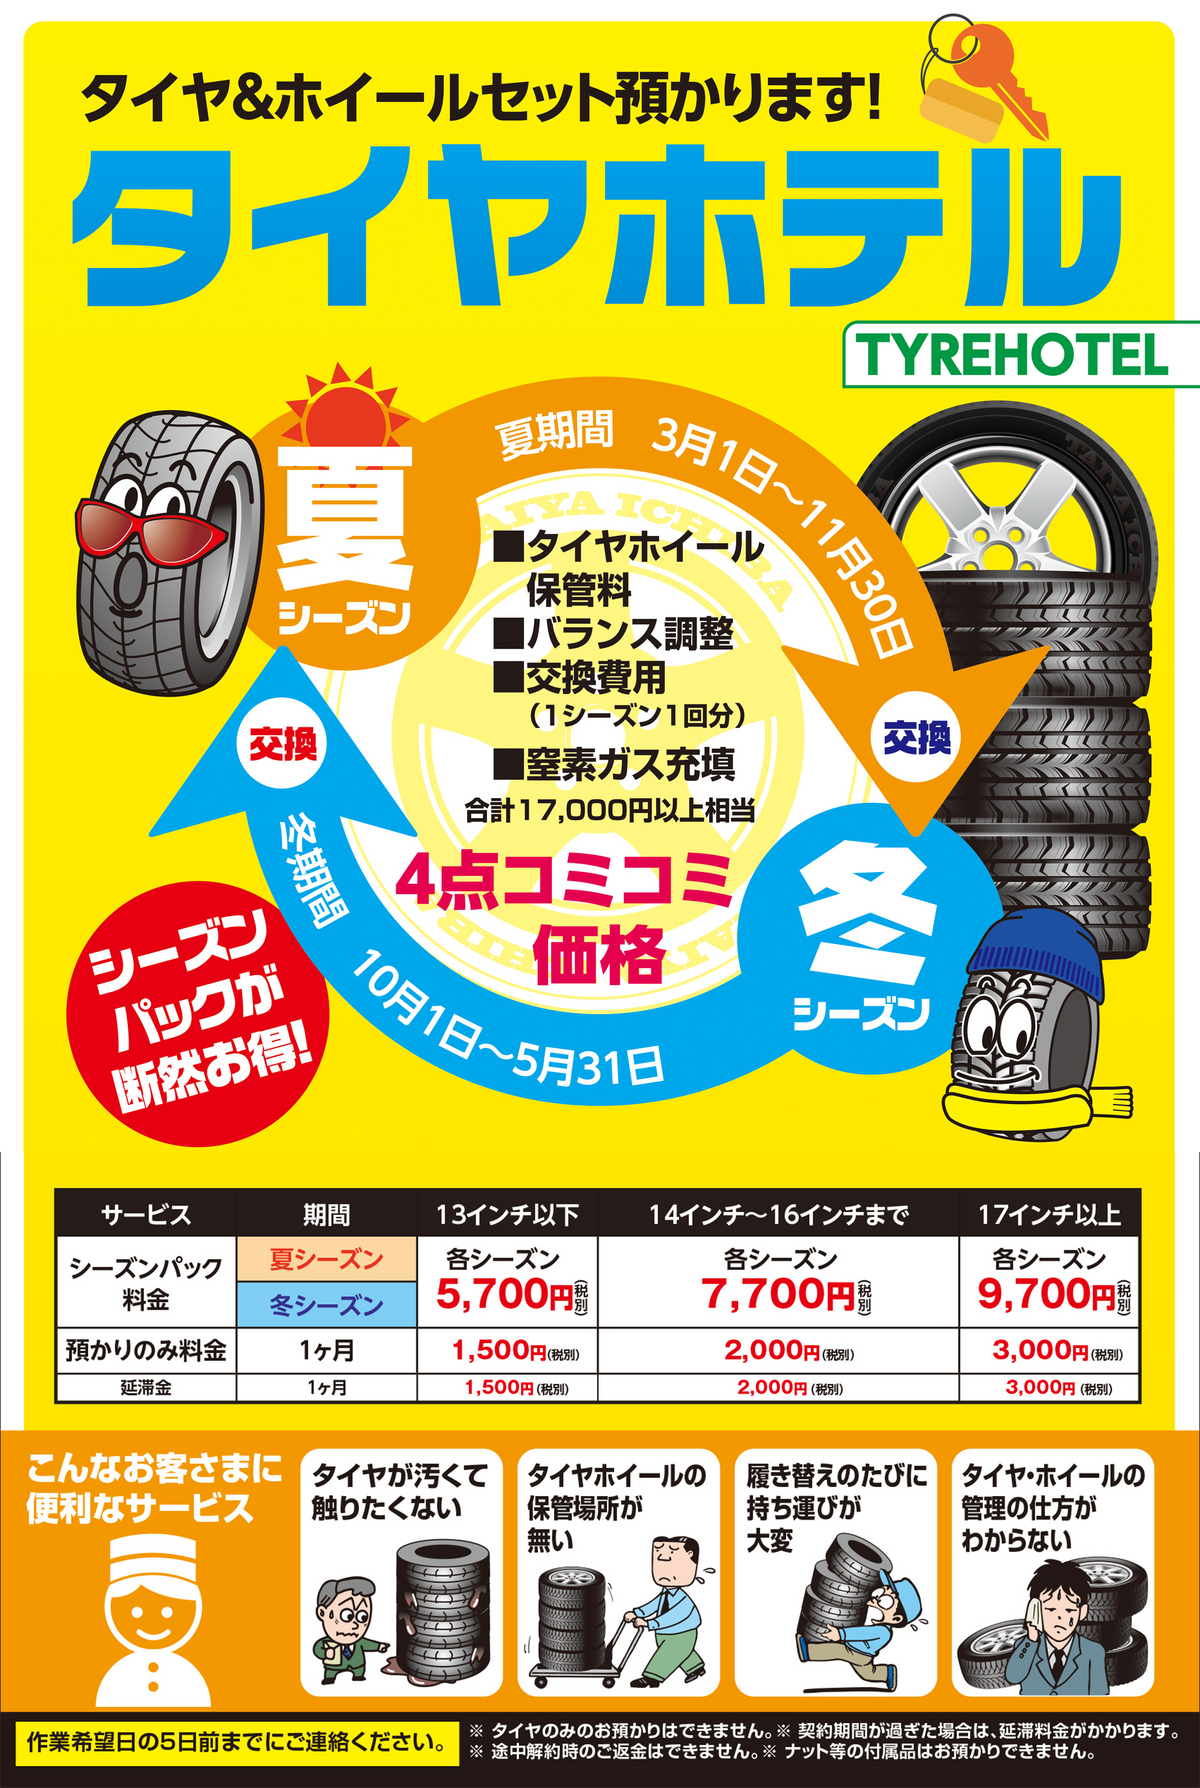 2_タイヤホテル2015年版POP-2【関東】.jpg